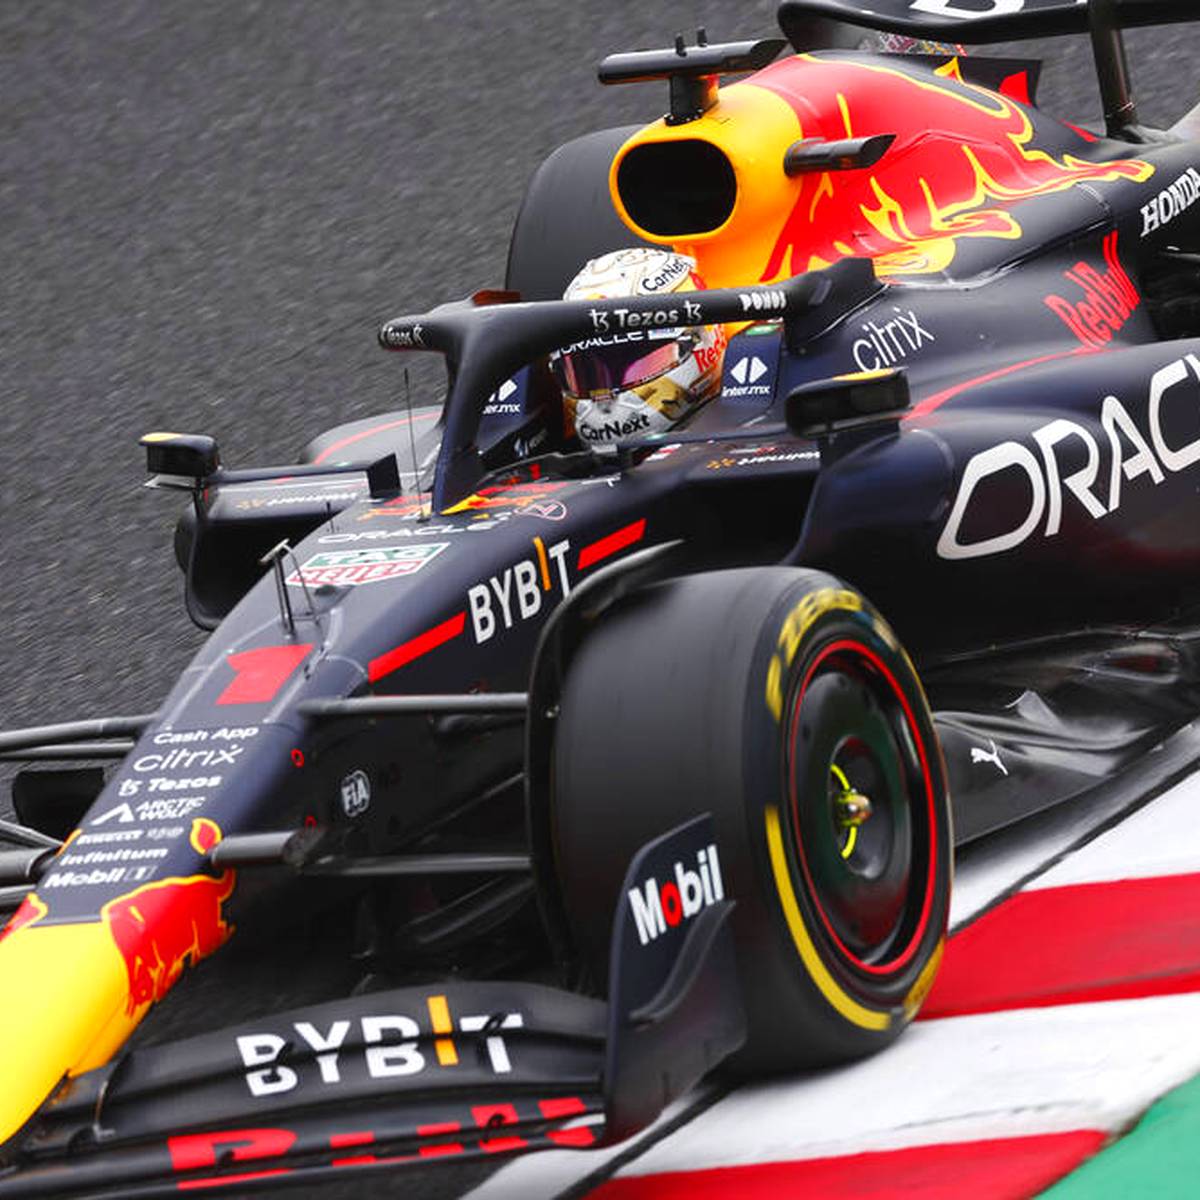 Formel 1 Rennen in Suzuka mit Verstappen, Vettel, Schumacher LIVE im TV, Stream, Ticker